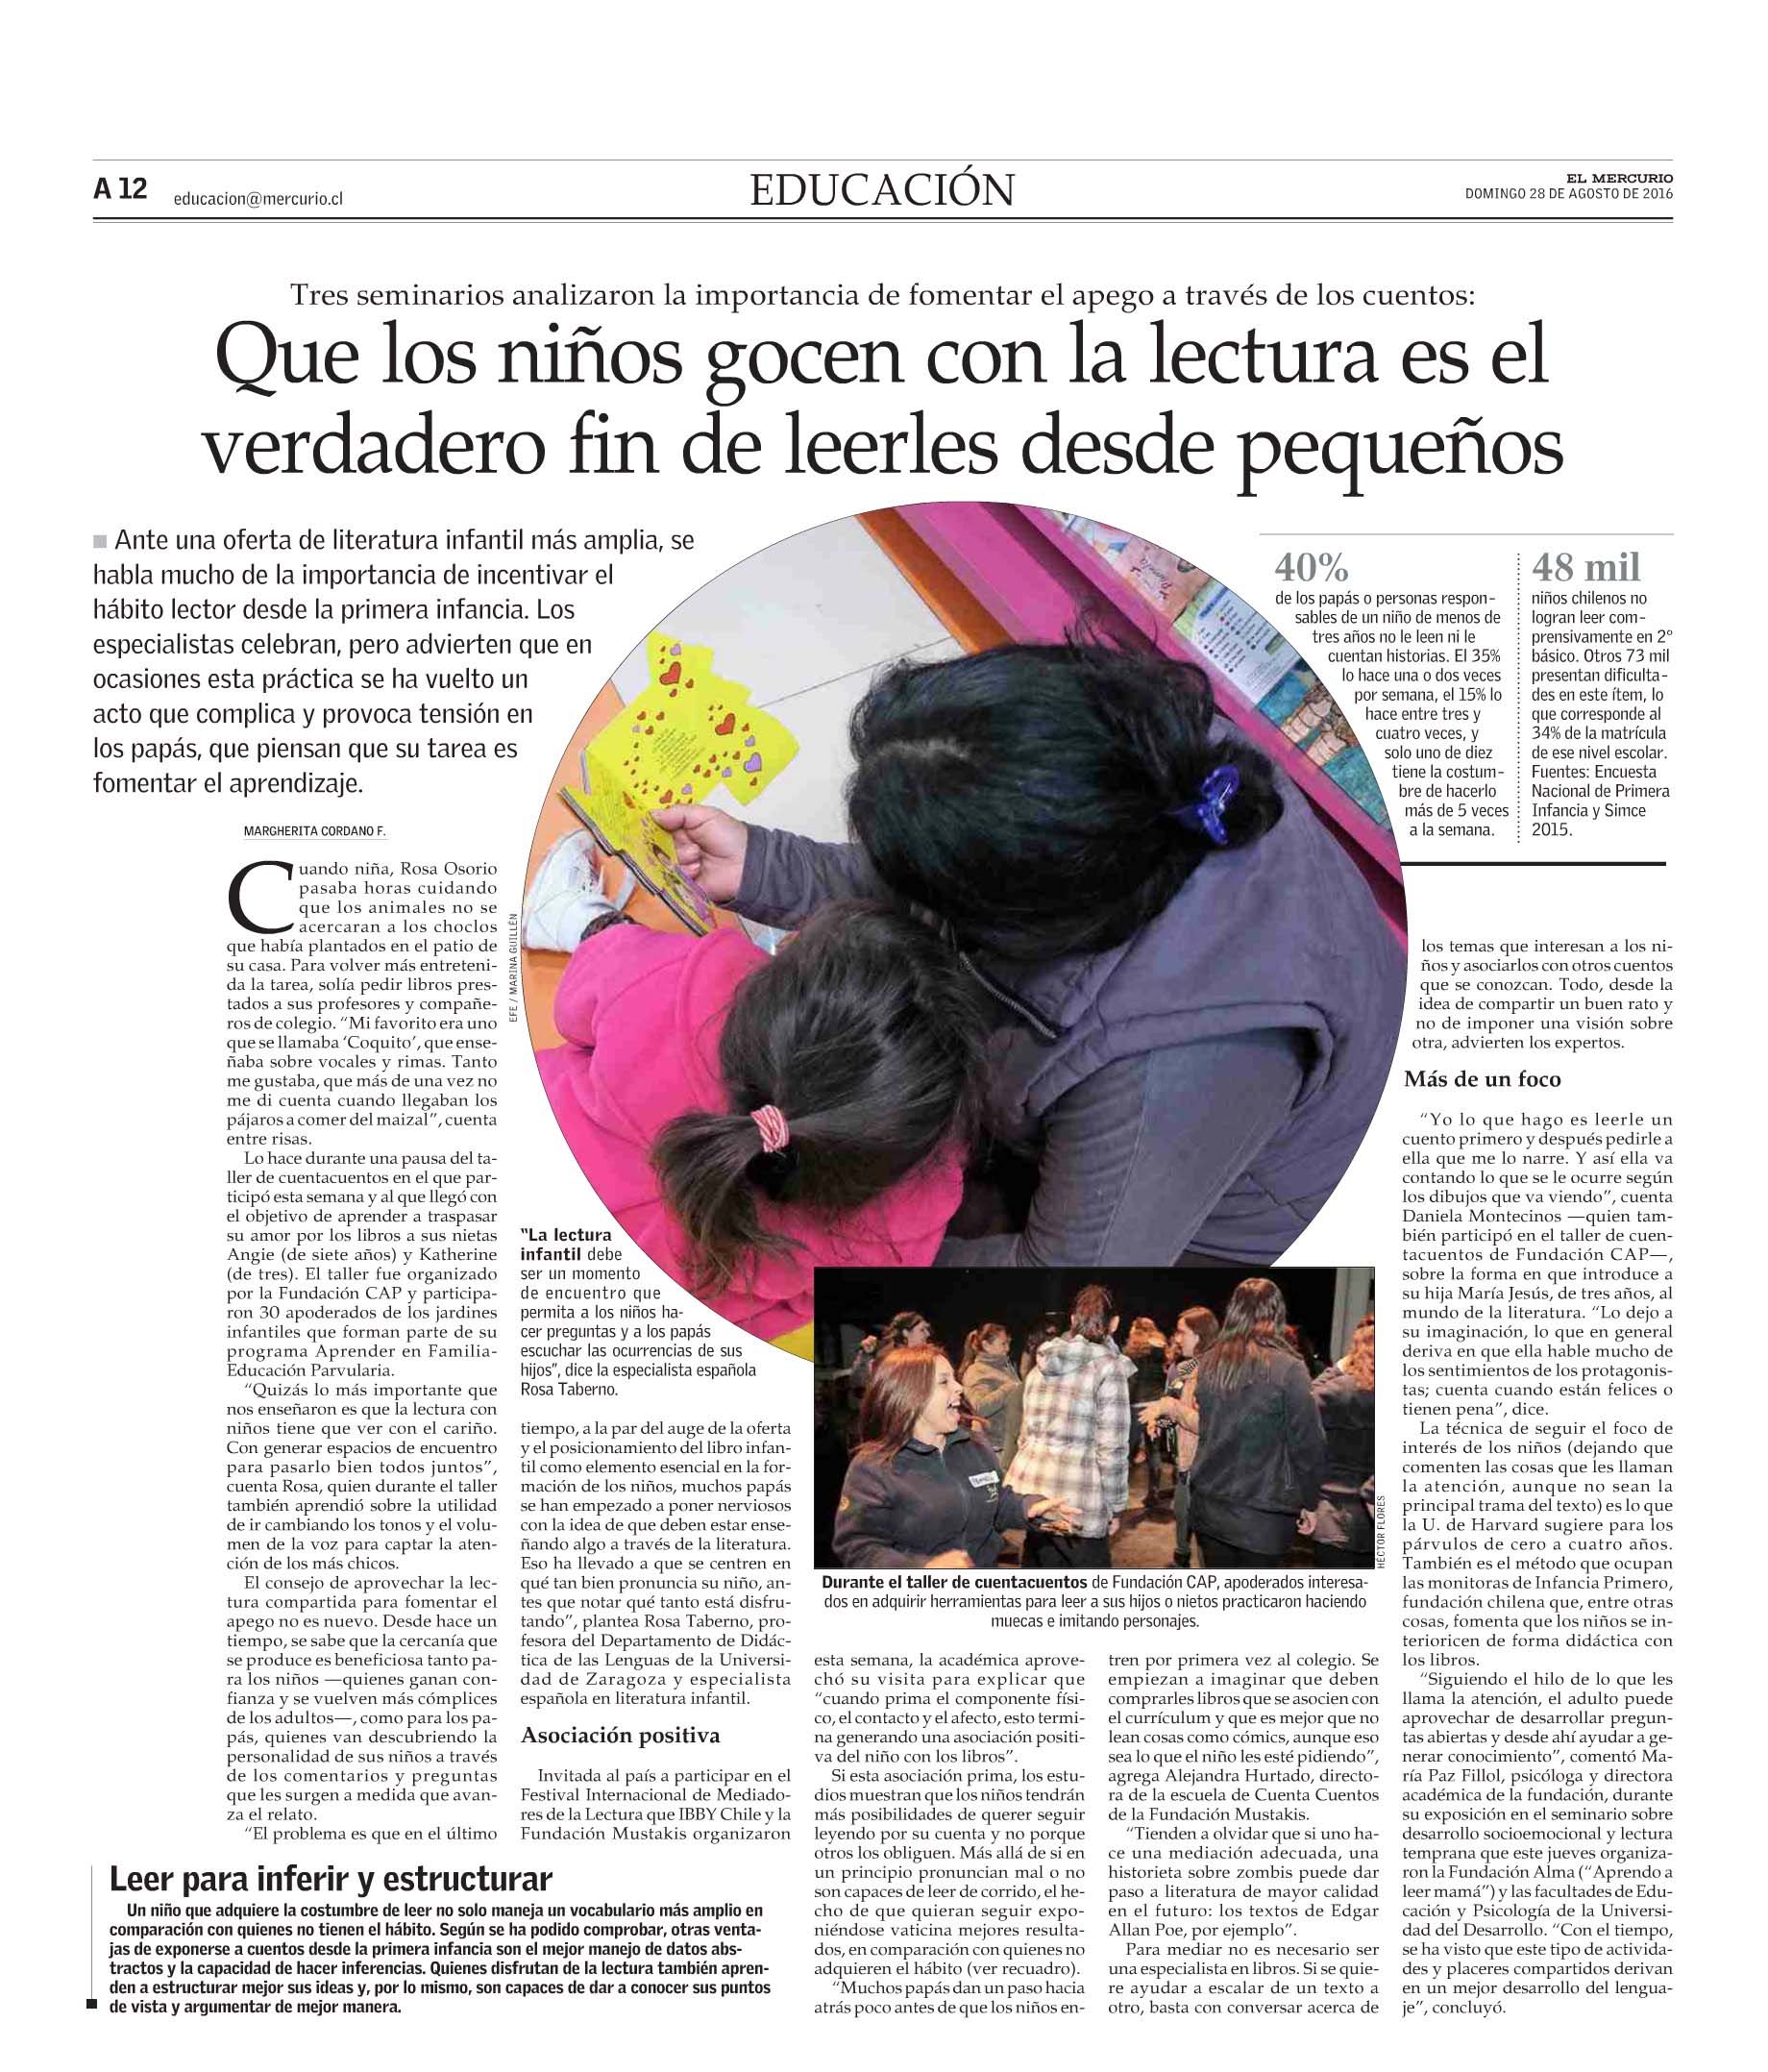 El Mercurio, Educación, domingo 28 de agosto de 2016